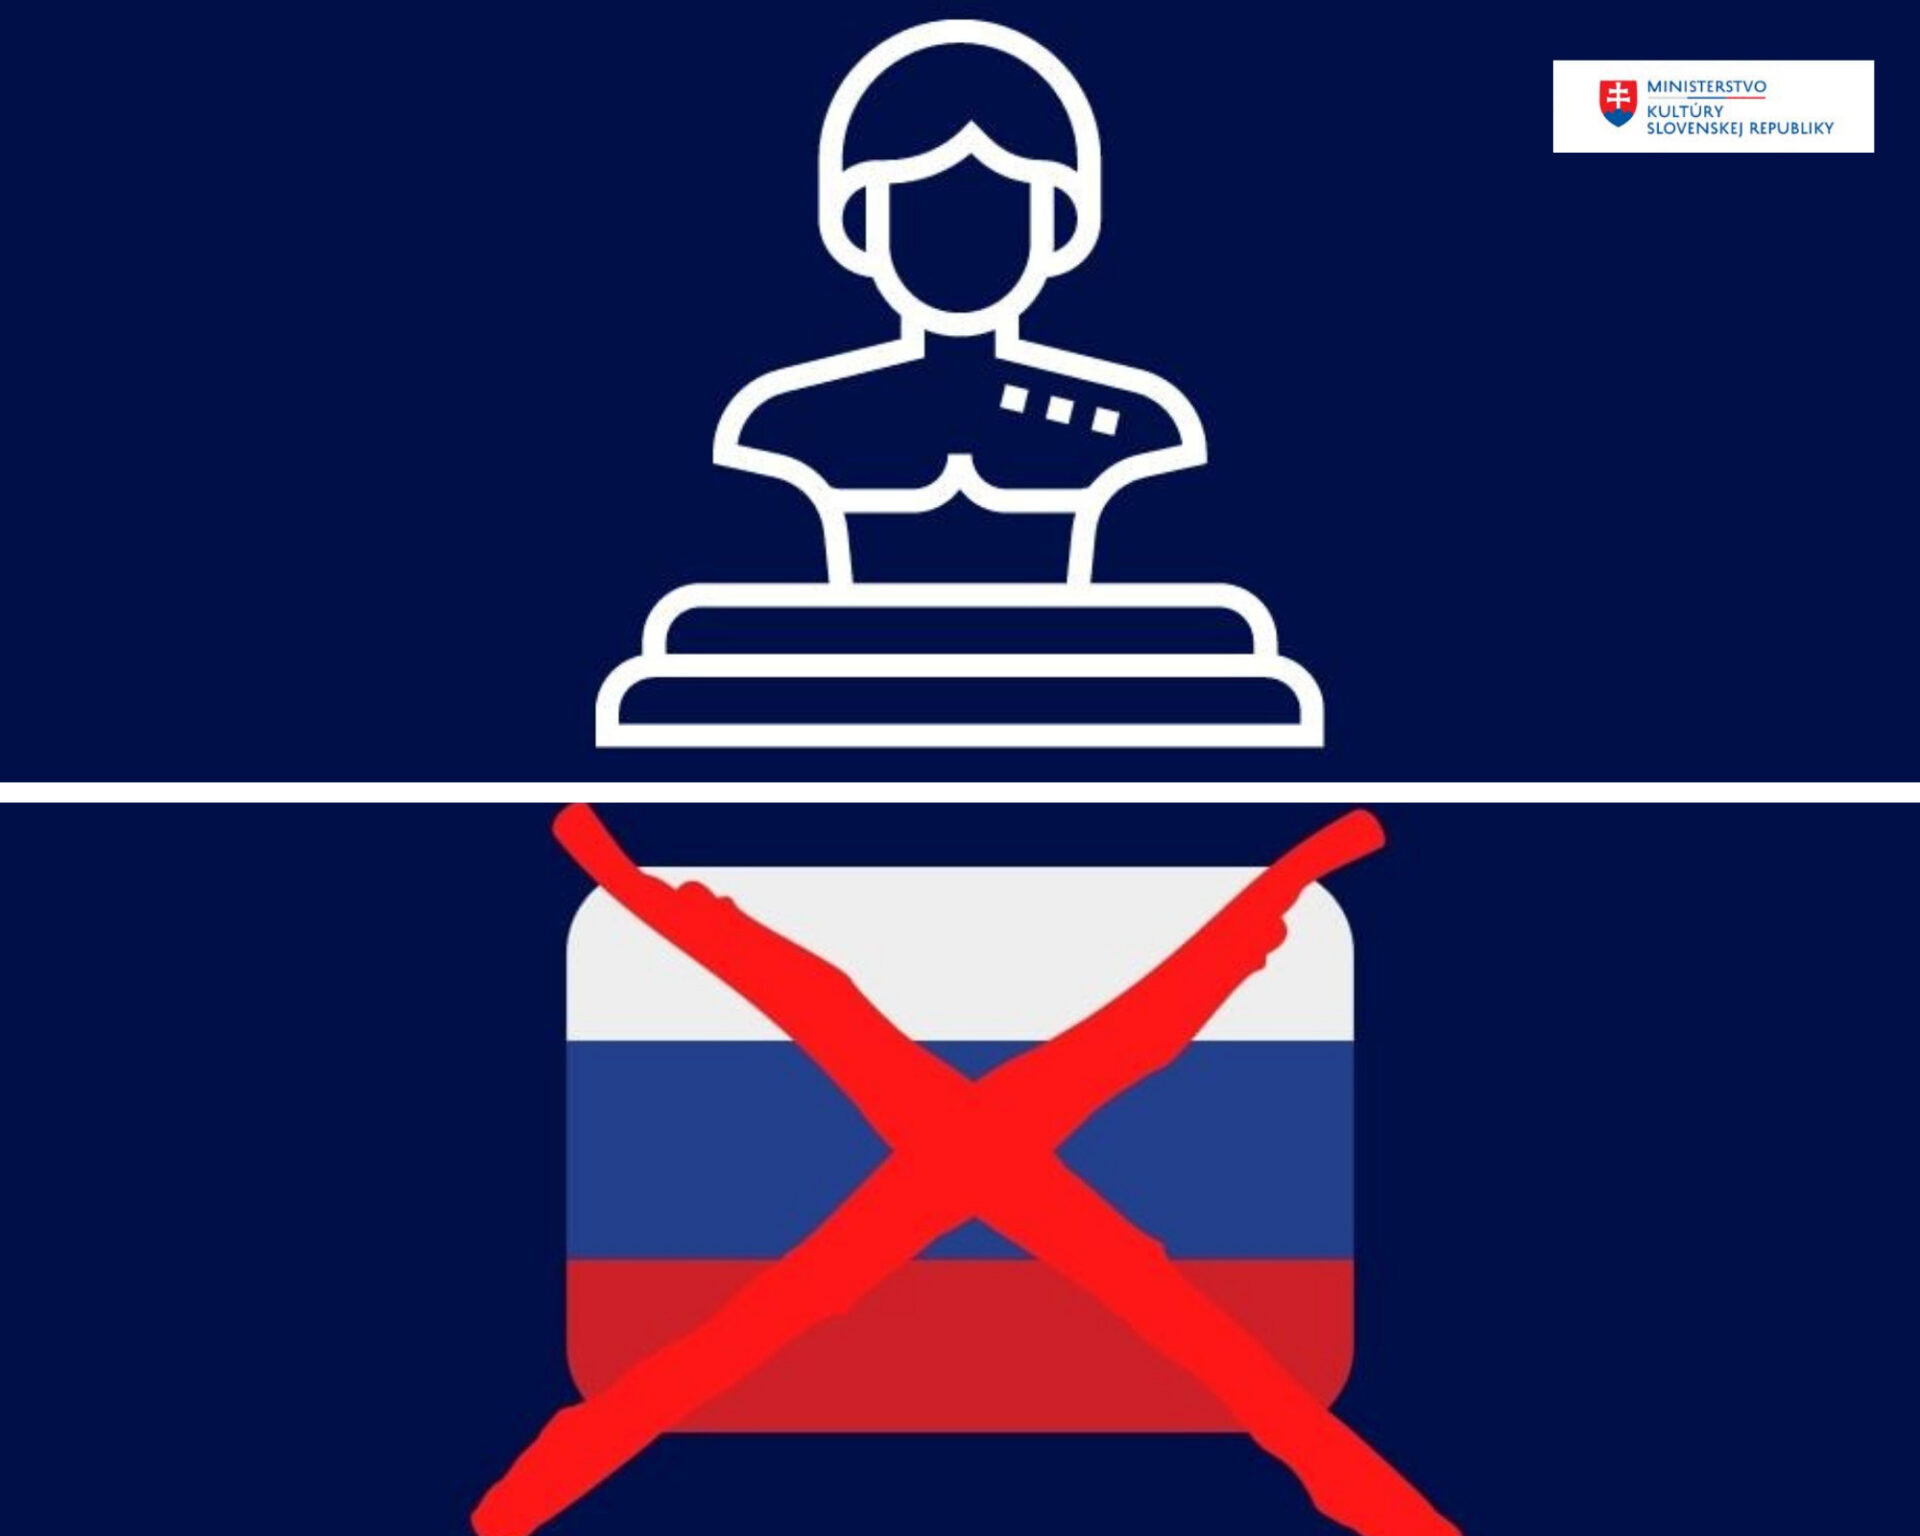 Slovensko ukončilo spoluprácu s ruskými inštitúciami